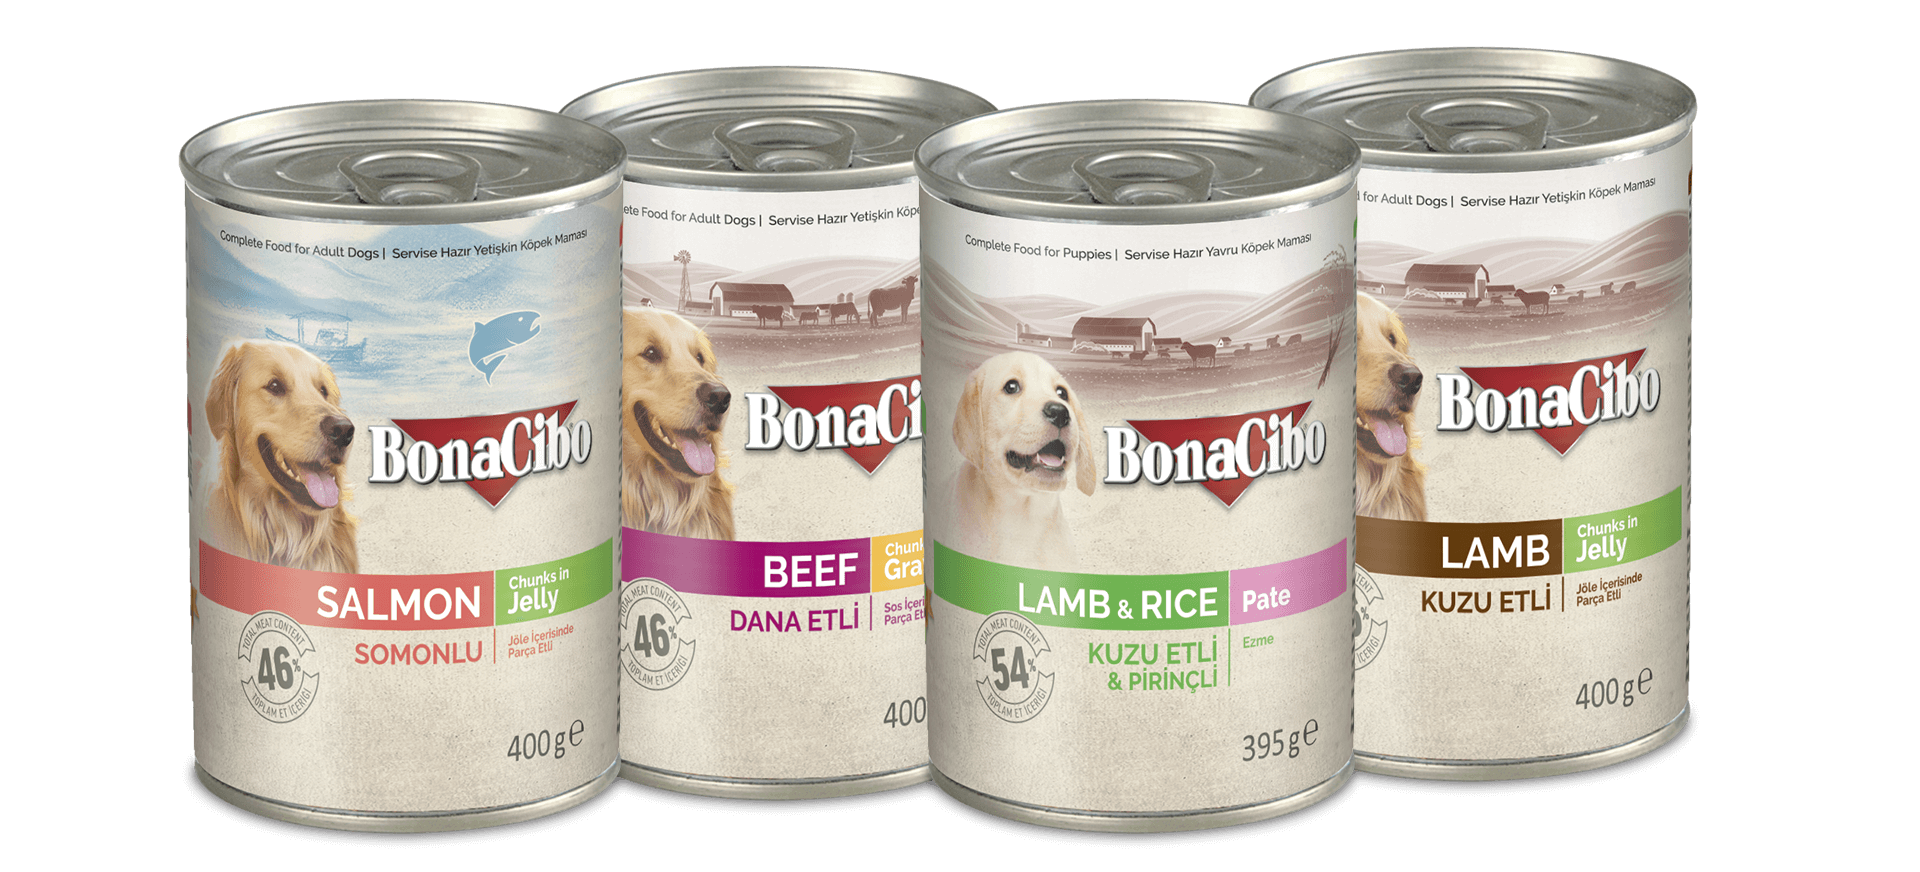 Bonacibo Konserve Kopek Mamalari Bonacibo Cat Dog Food